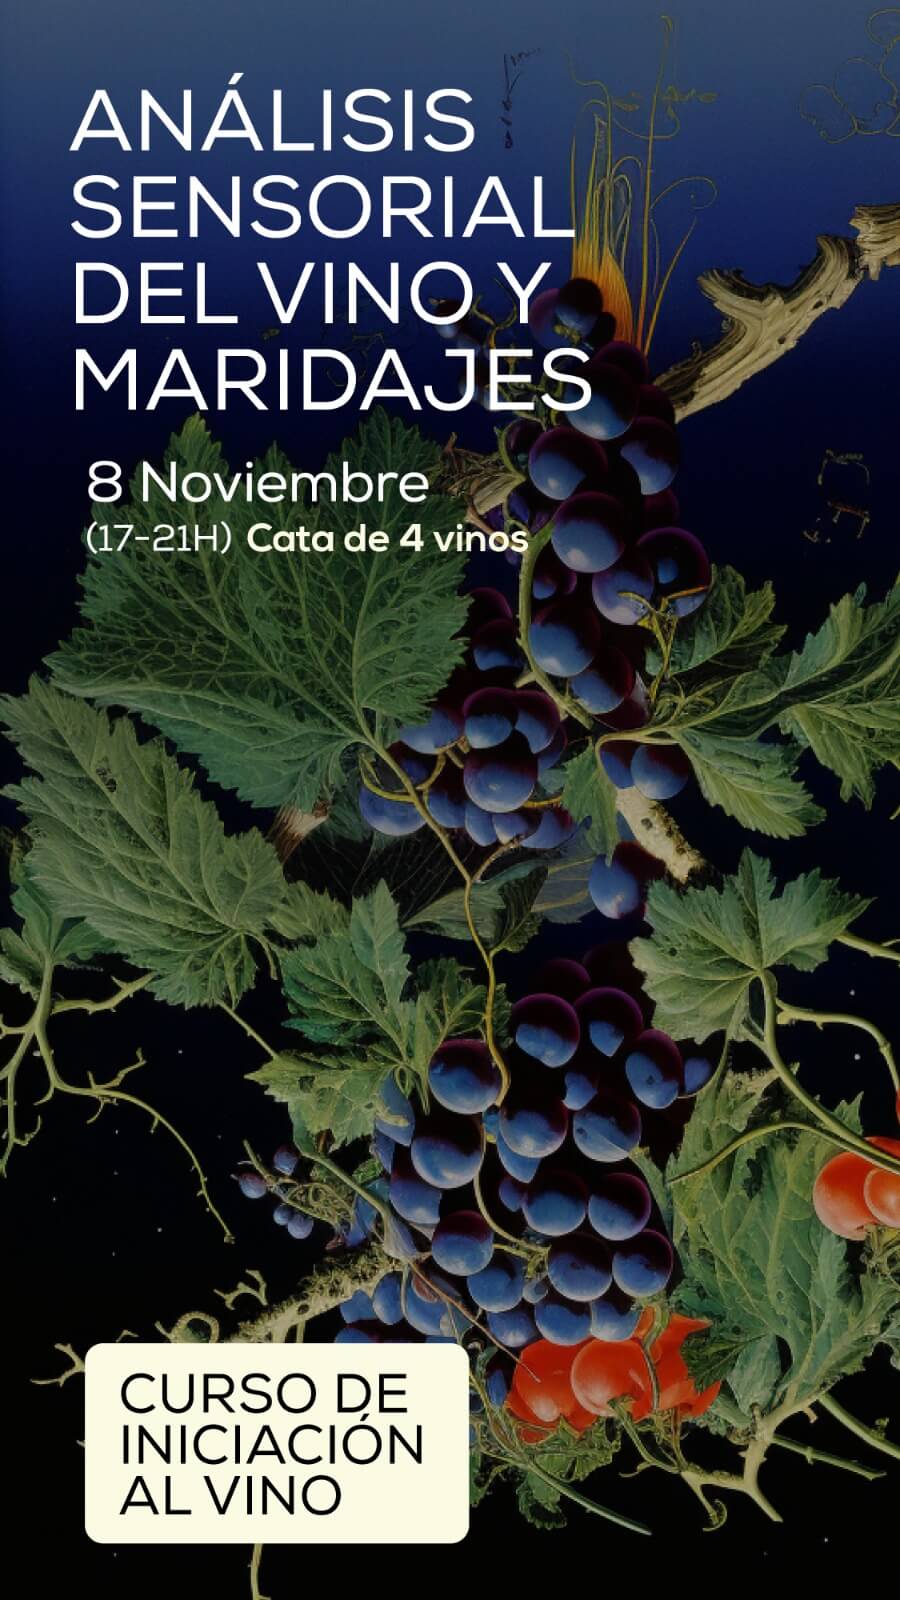 Eventos Masterclass Análisis Sensorial y Maridajes EnoValencia - Cata, eventos y venta de vino 3